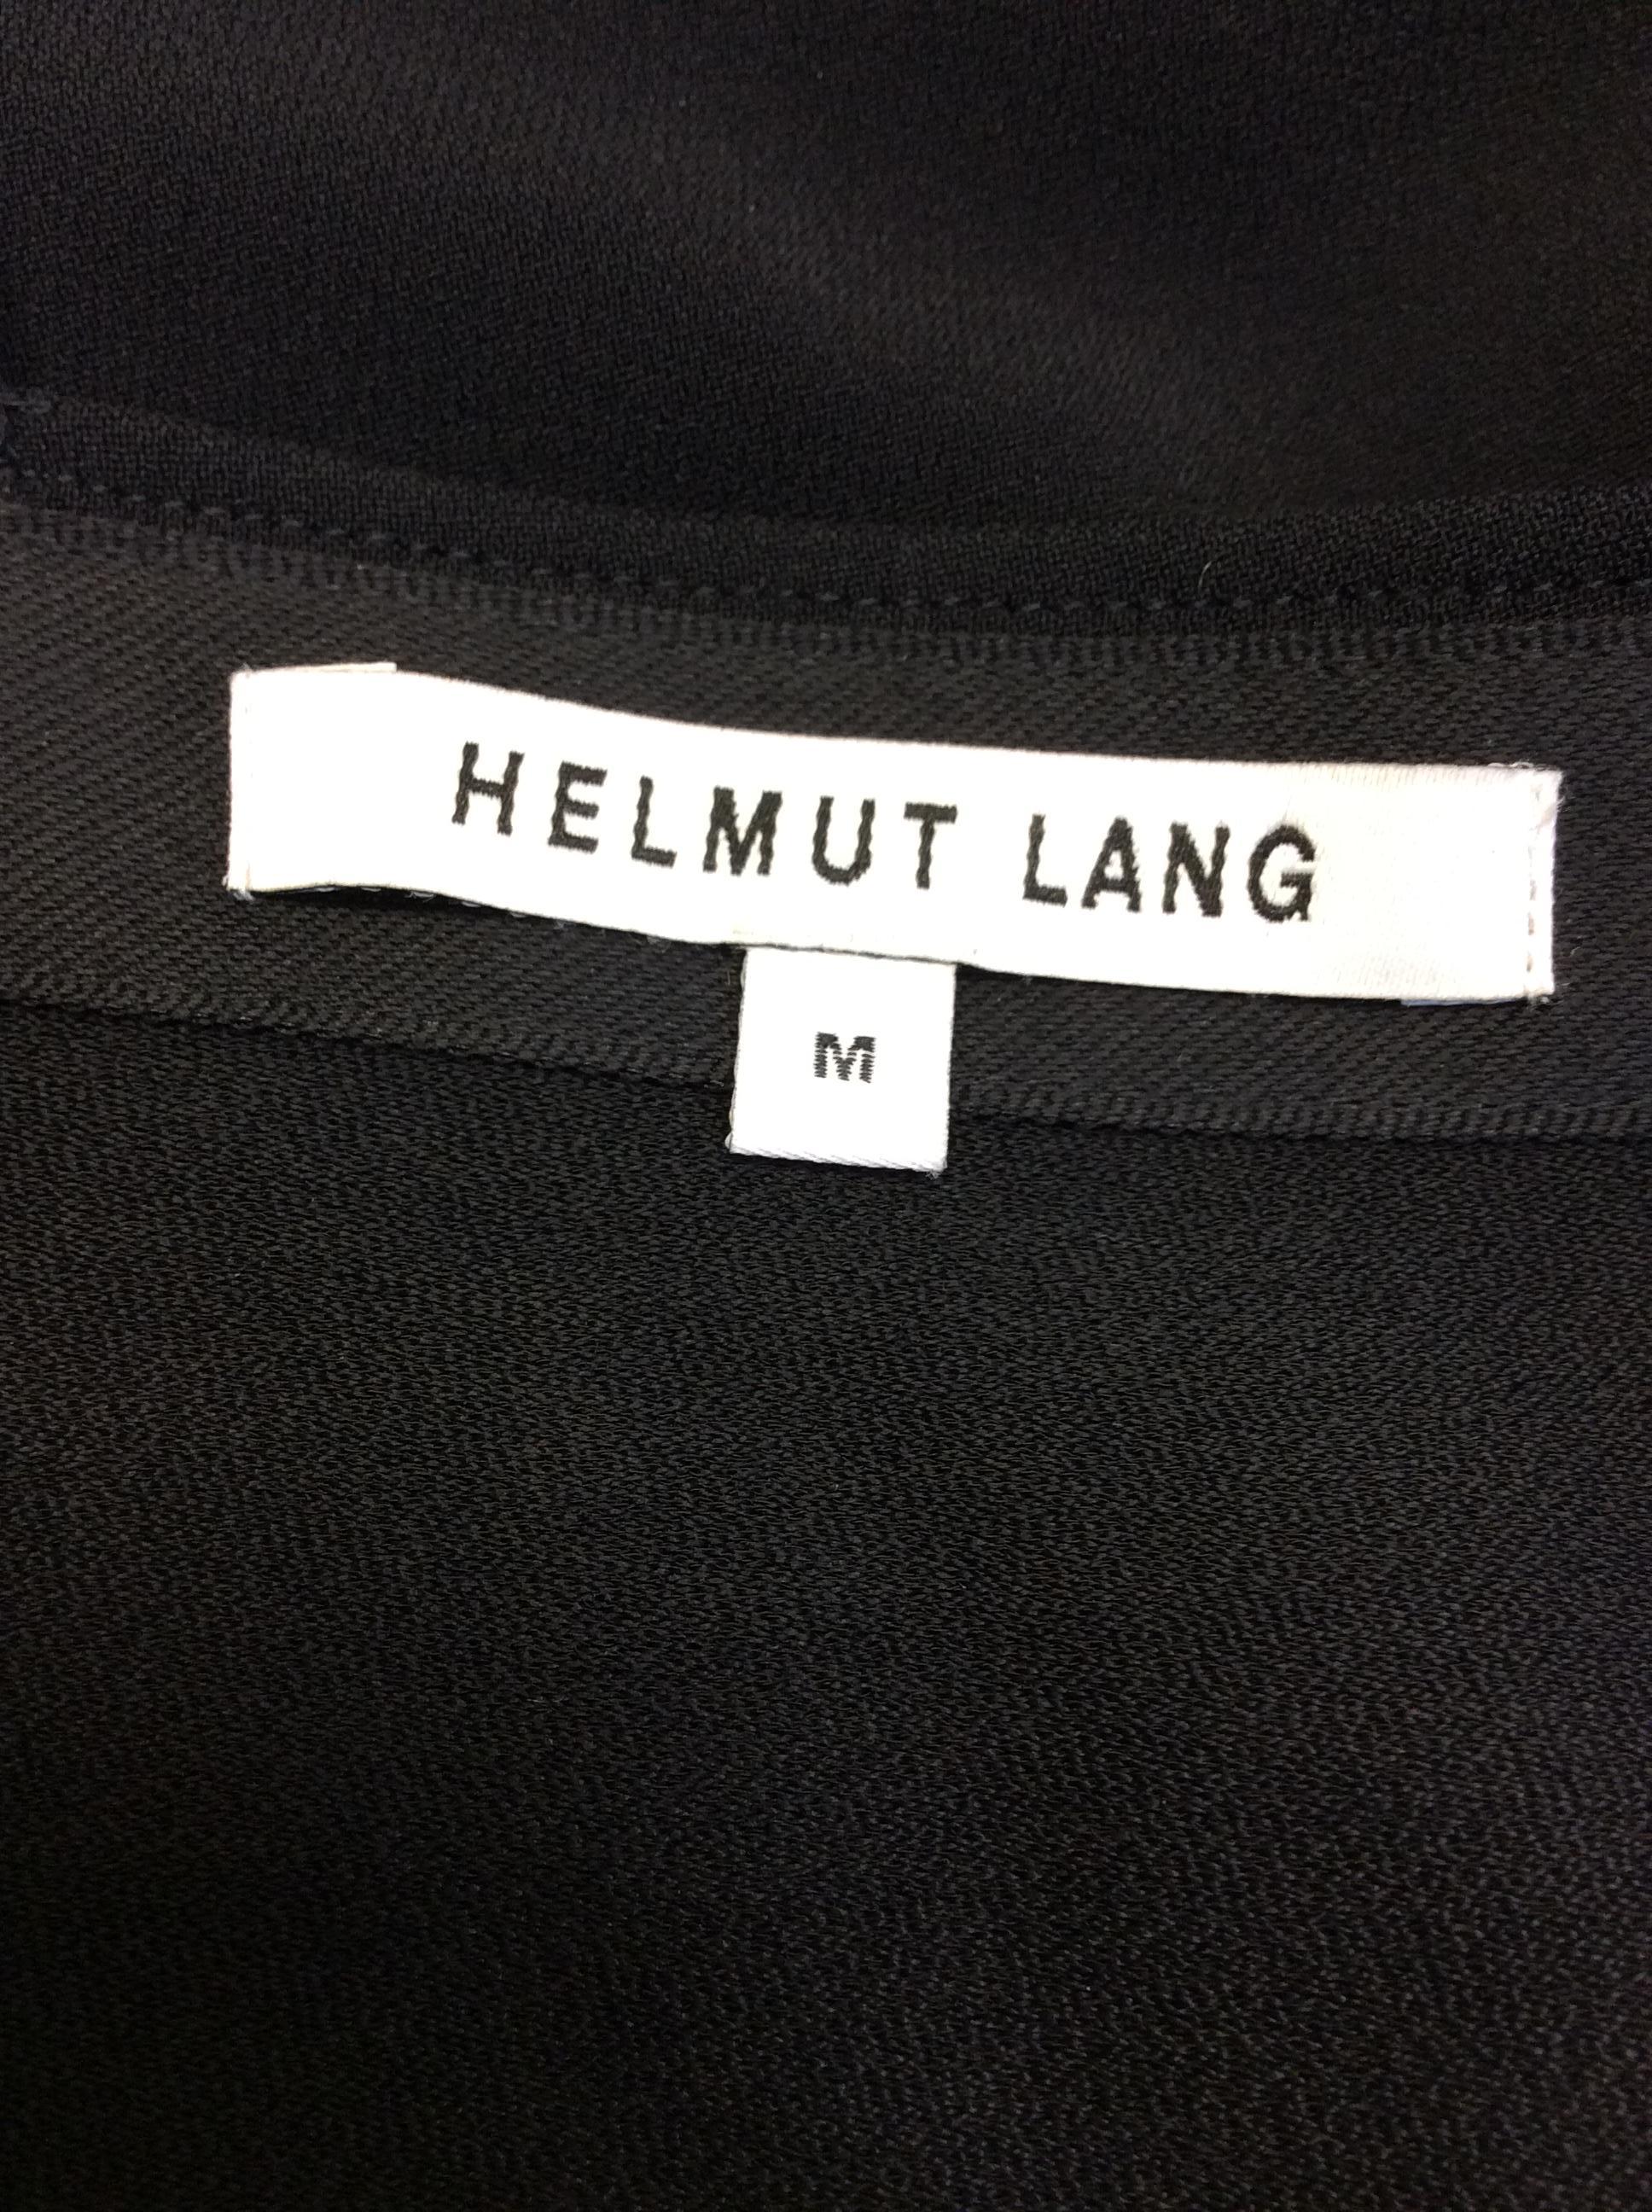 Helmut Lang Black Dress For Sale 3